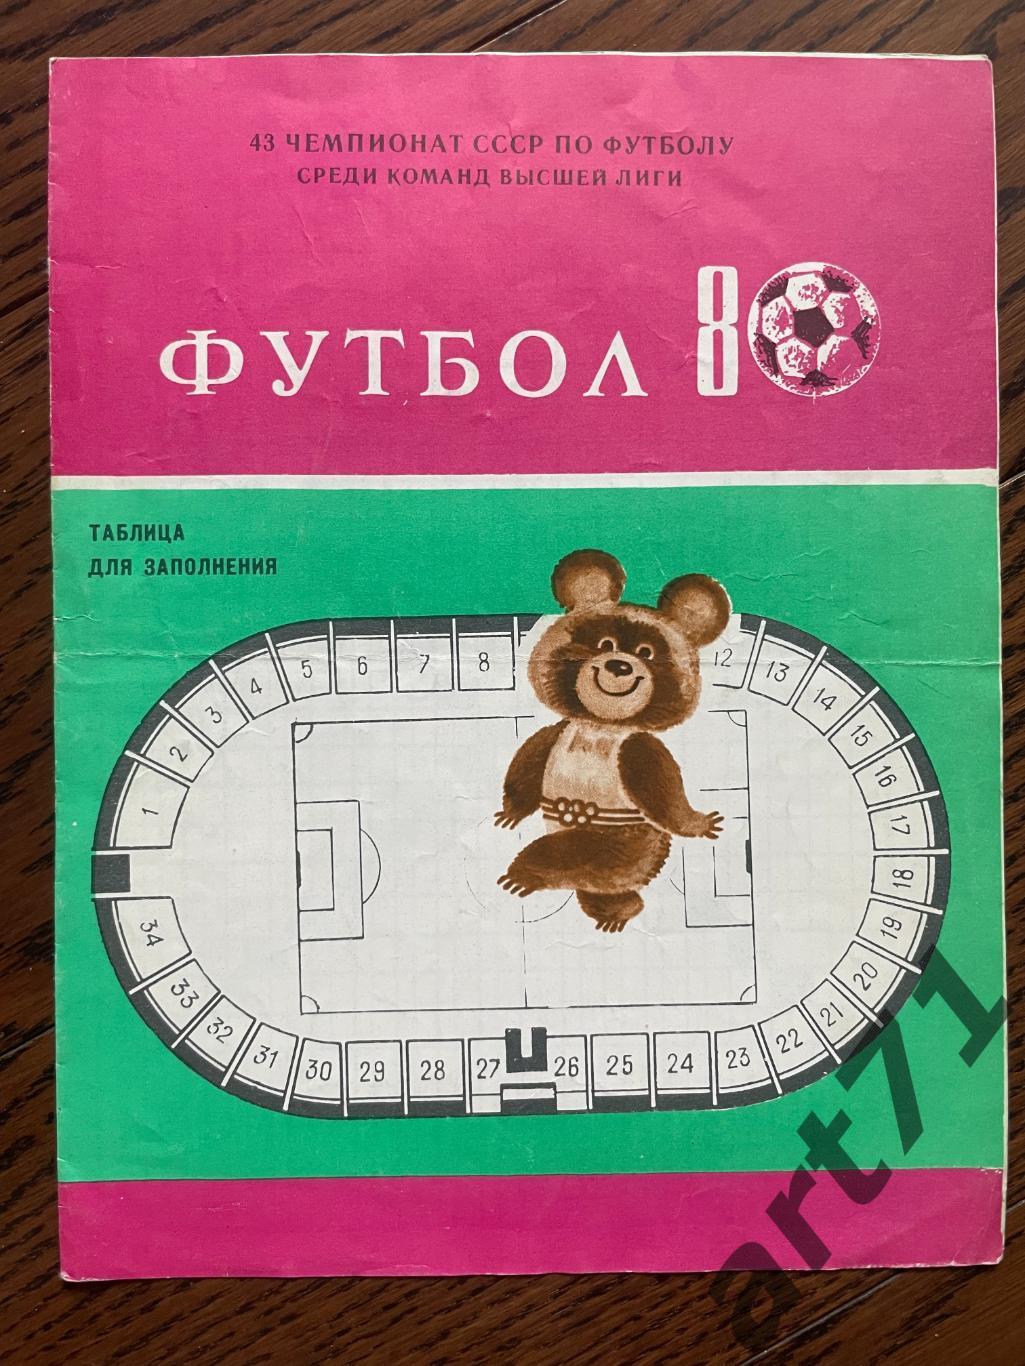 Шахтер Донецк - 1980. Календарь игр, таблицы